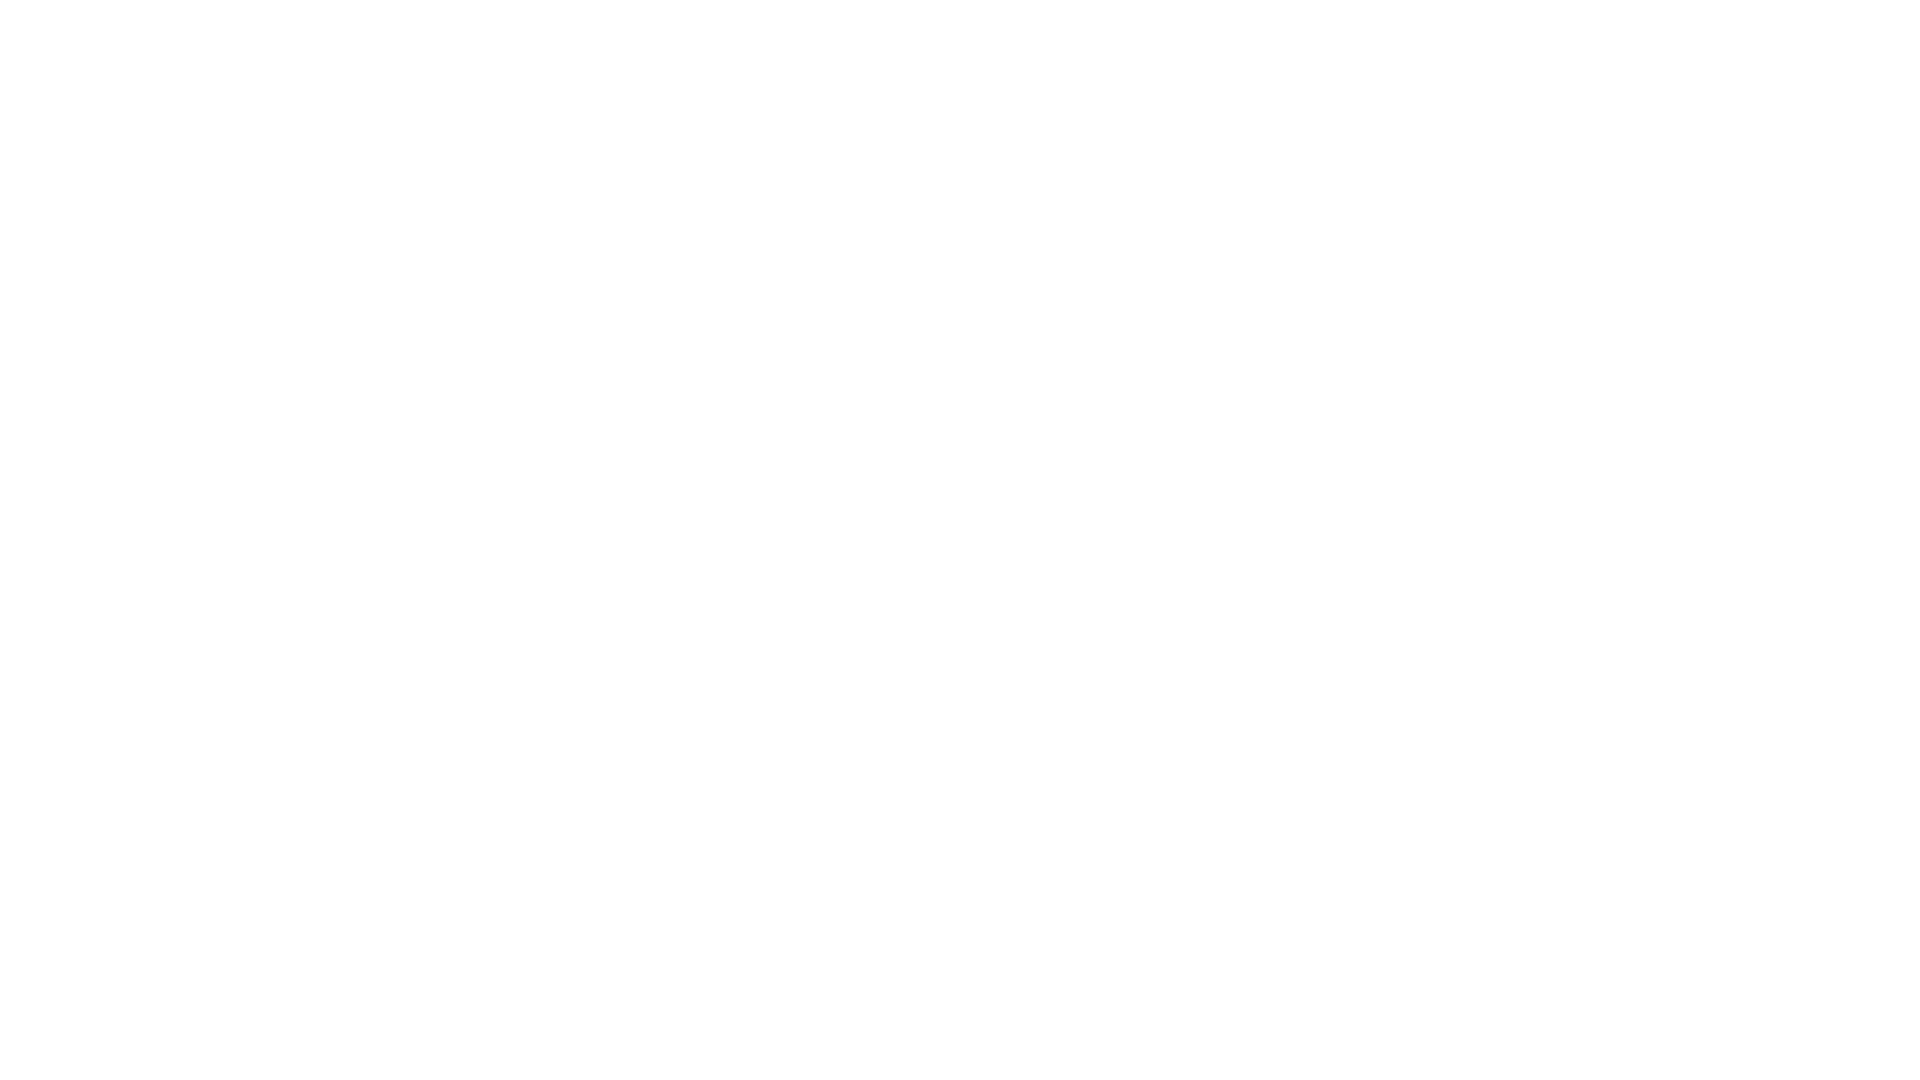 Total Corruption